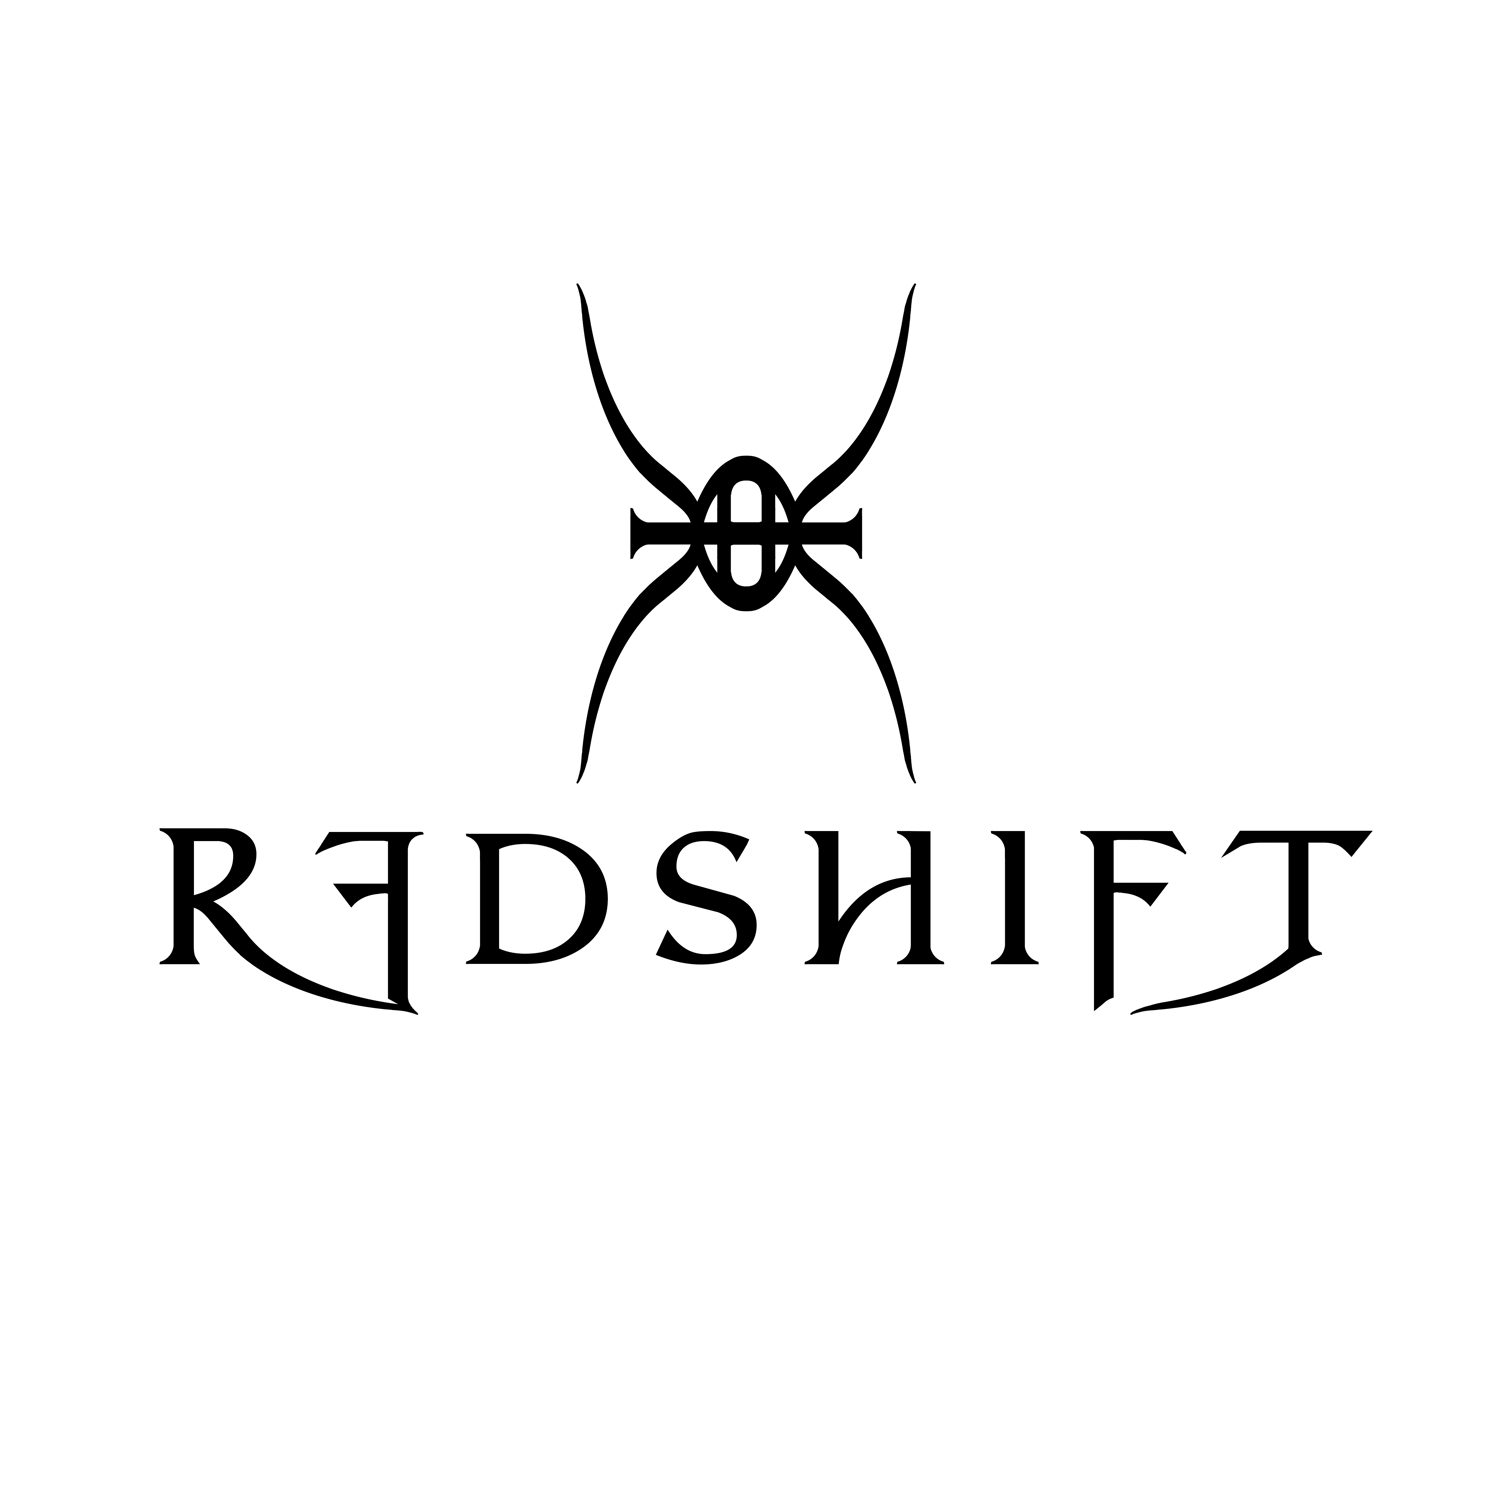 RedshiftBand